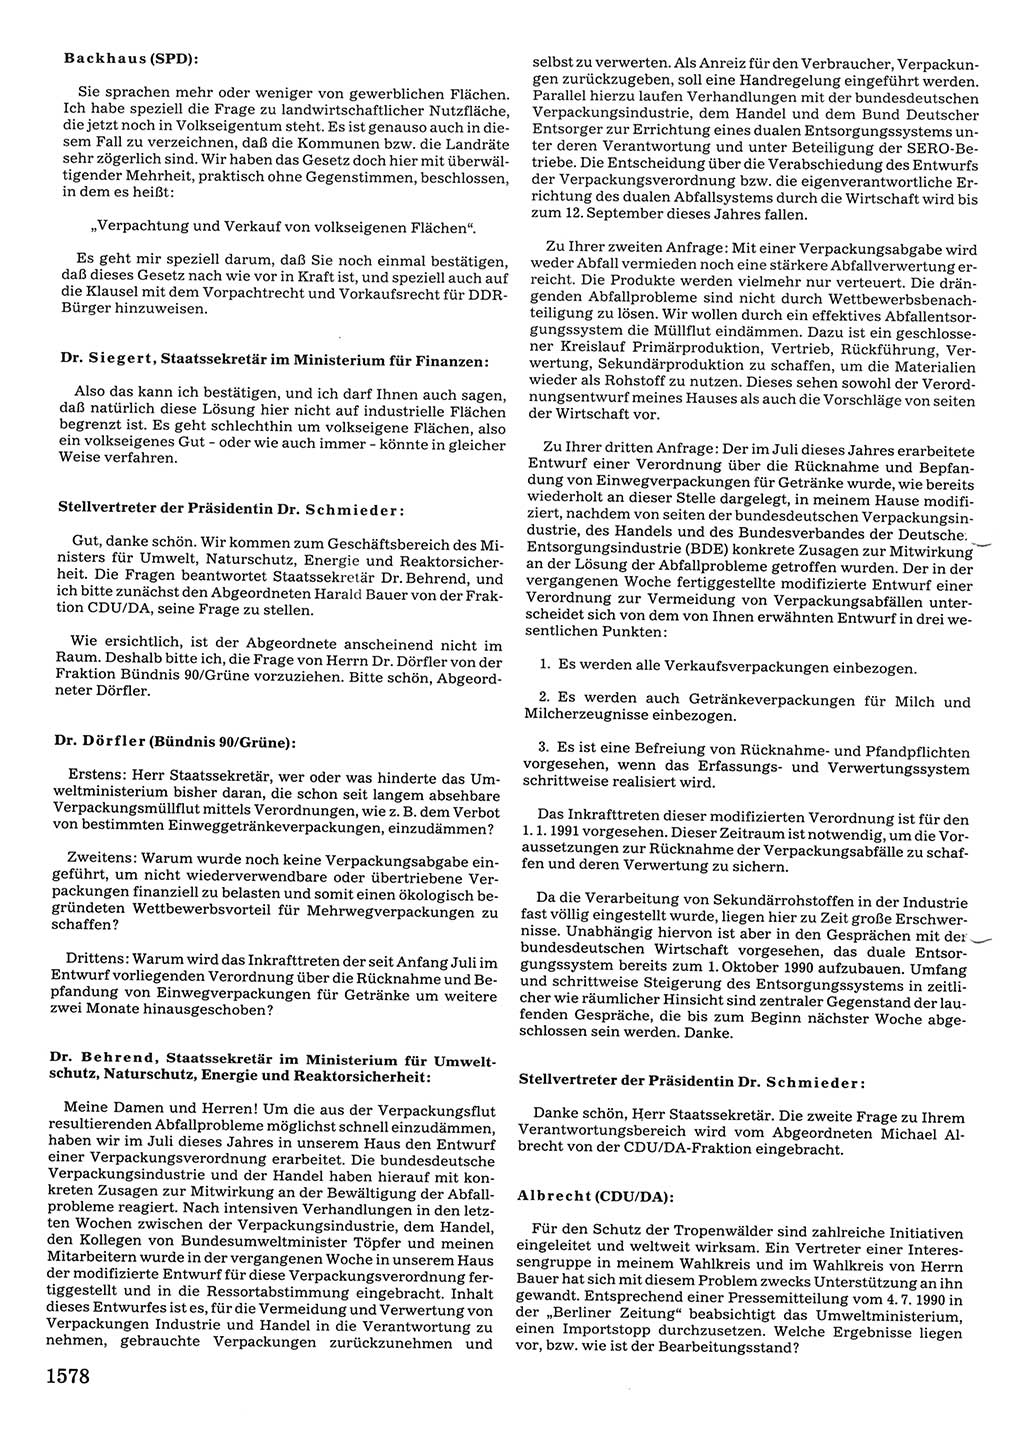 Tagungen der Volkskammer (VK) der Deutschen Demokratischen Republik (DDR), 10. Wahlperiode 1990, Seite 1578 (VK. DDR 10. WP. 1990, Prot. Tg. 1-38, 5.4.-2.10.1990, S. 1578)